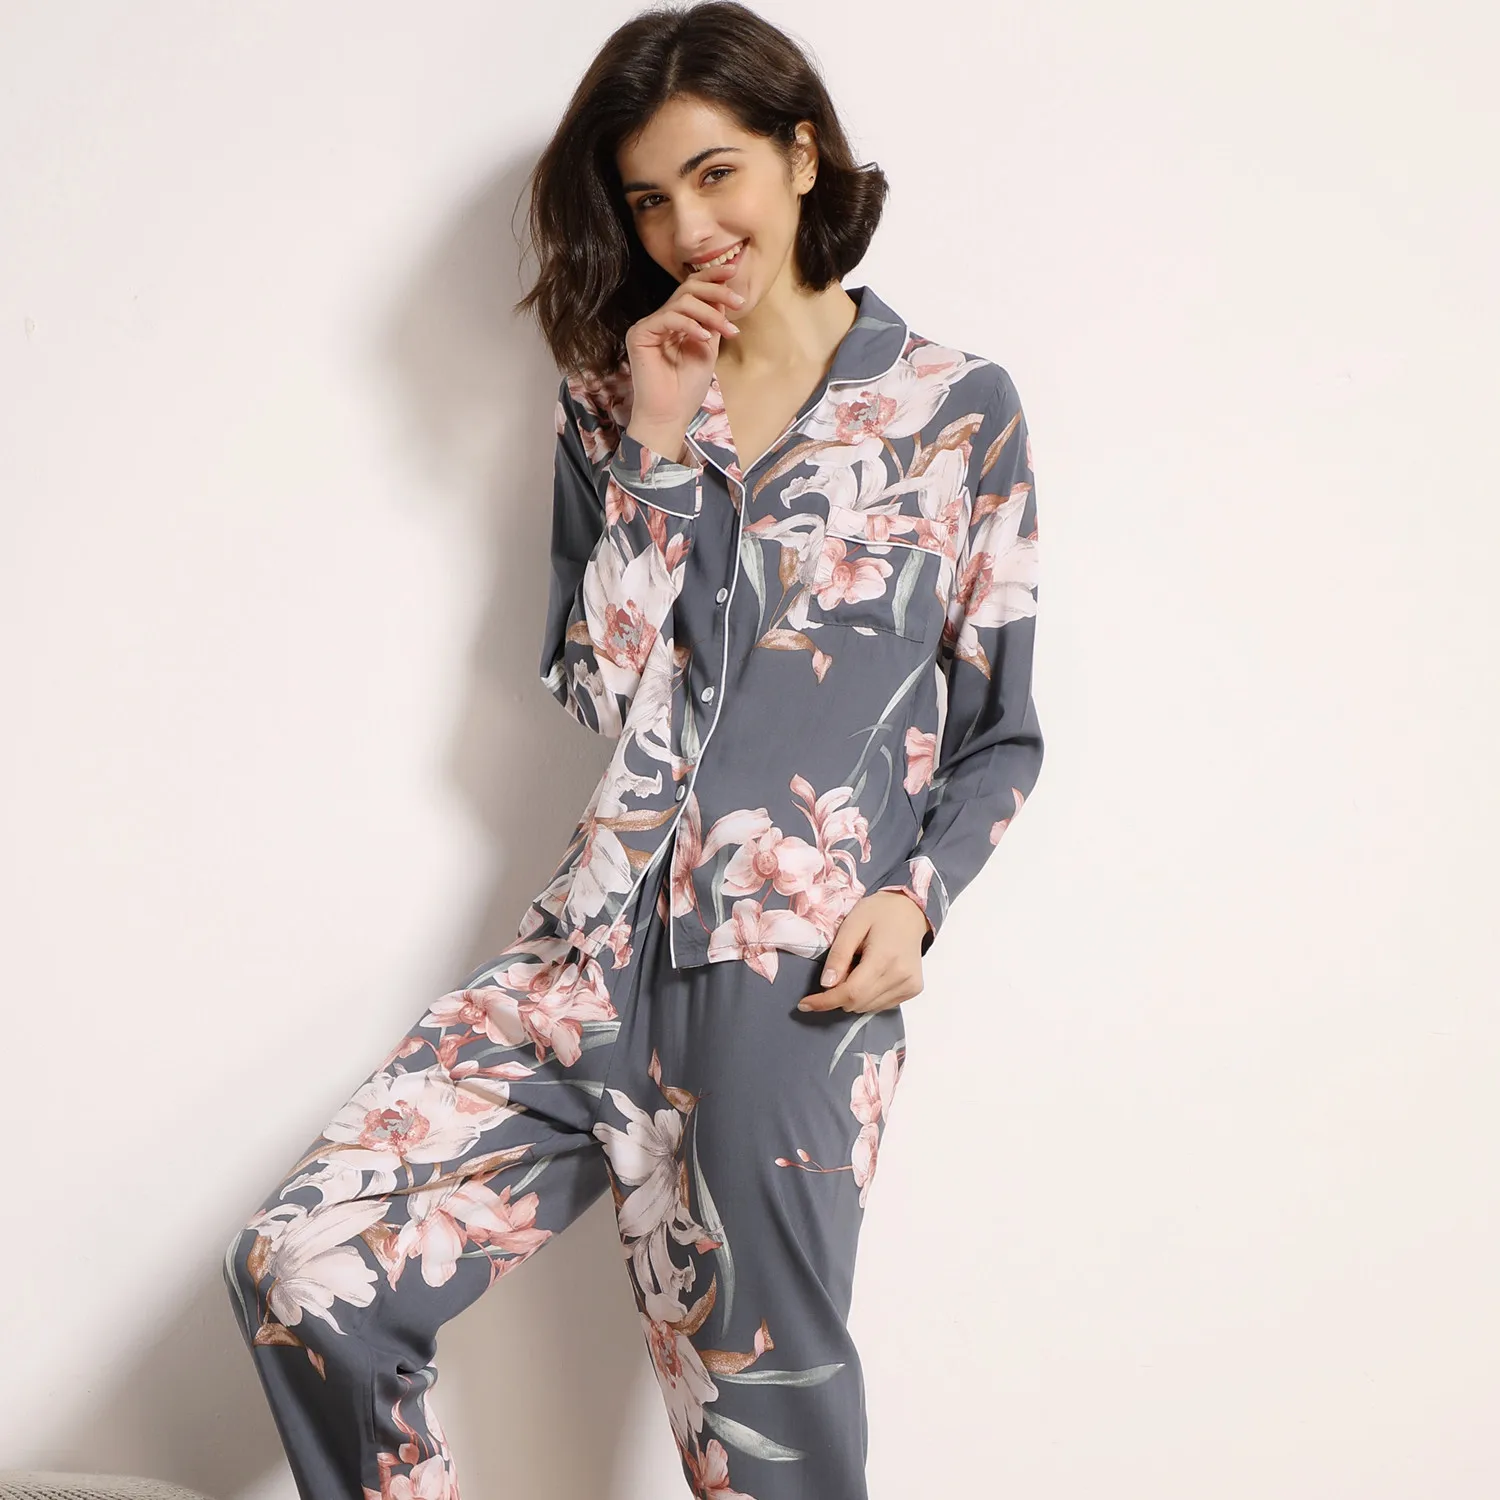 

Algodo de manga comprida calas compridas mulheres pijamas definir para a primavera e vero outono confortvel cardigan topos senh